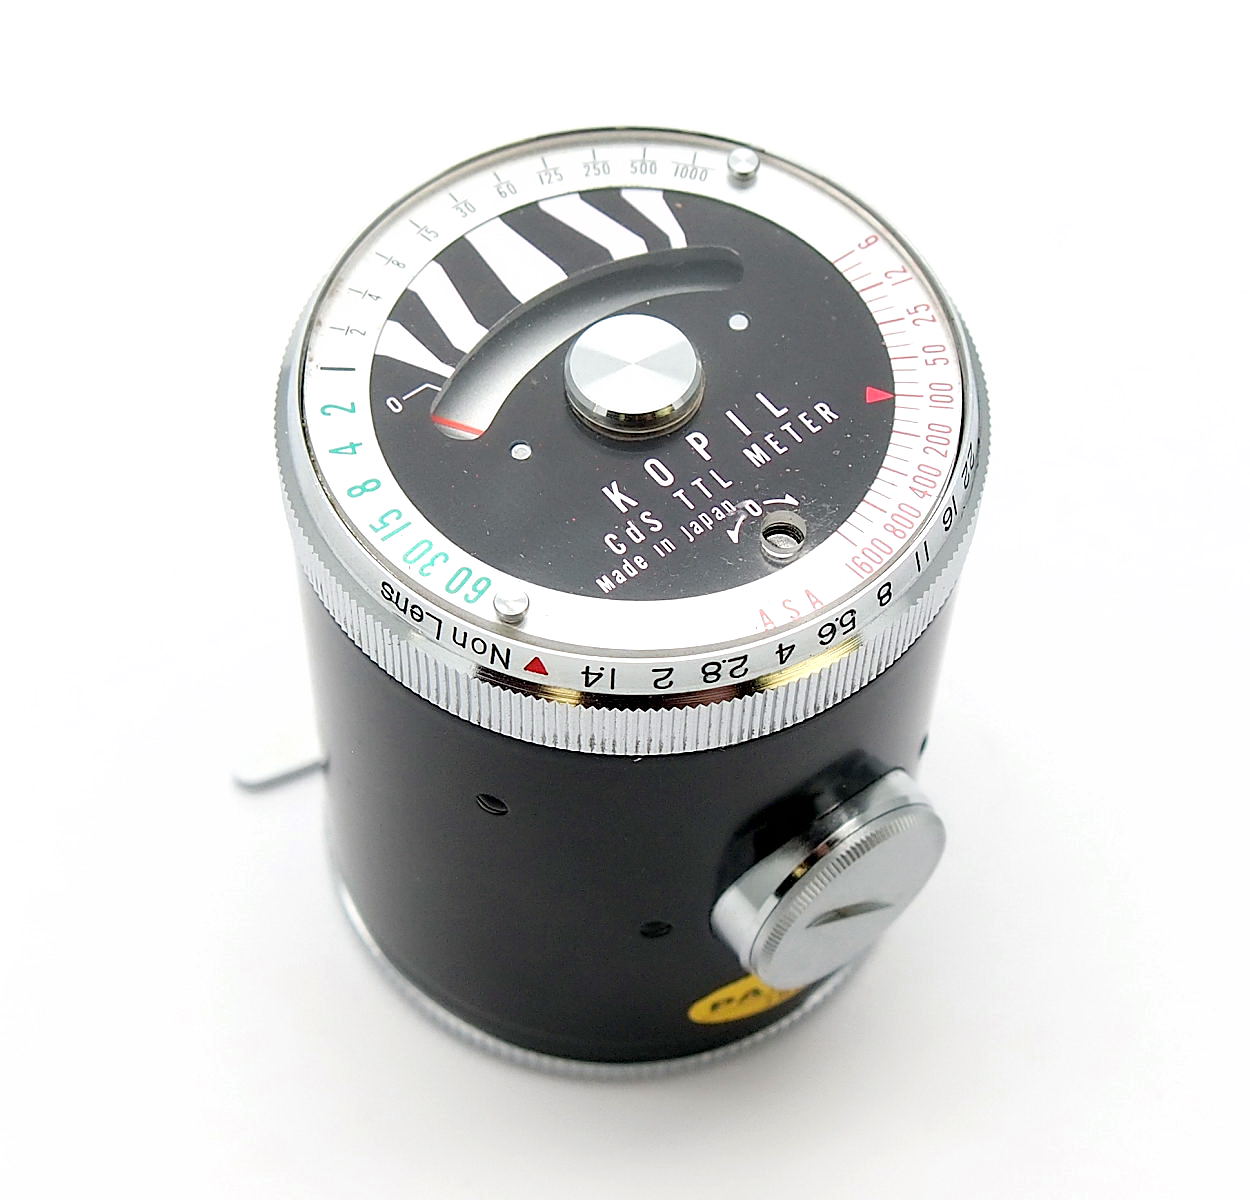 Kopil TTL lightmeter for Exakta #8950